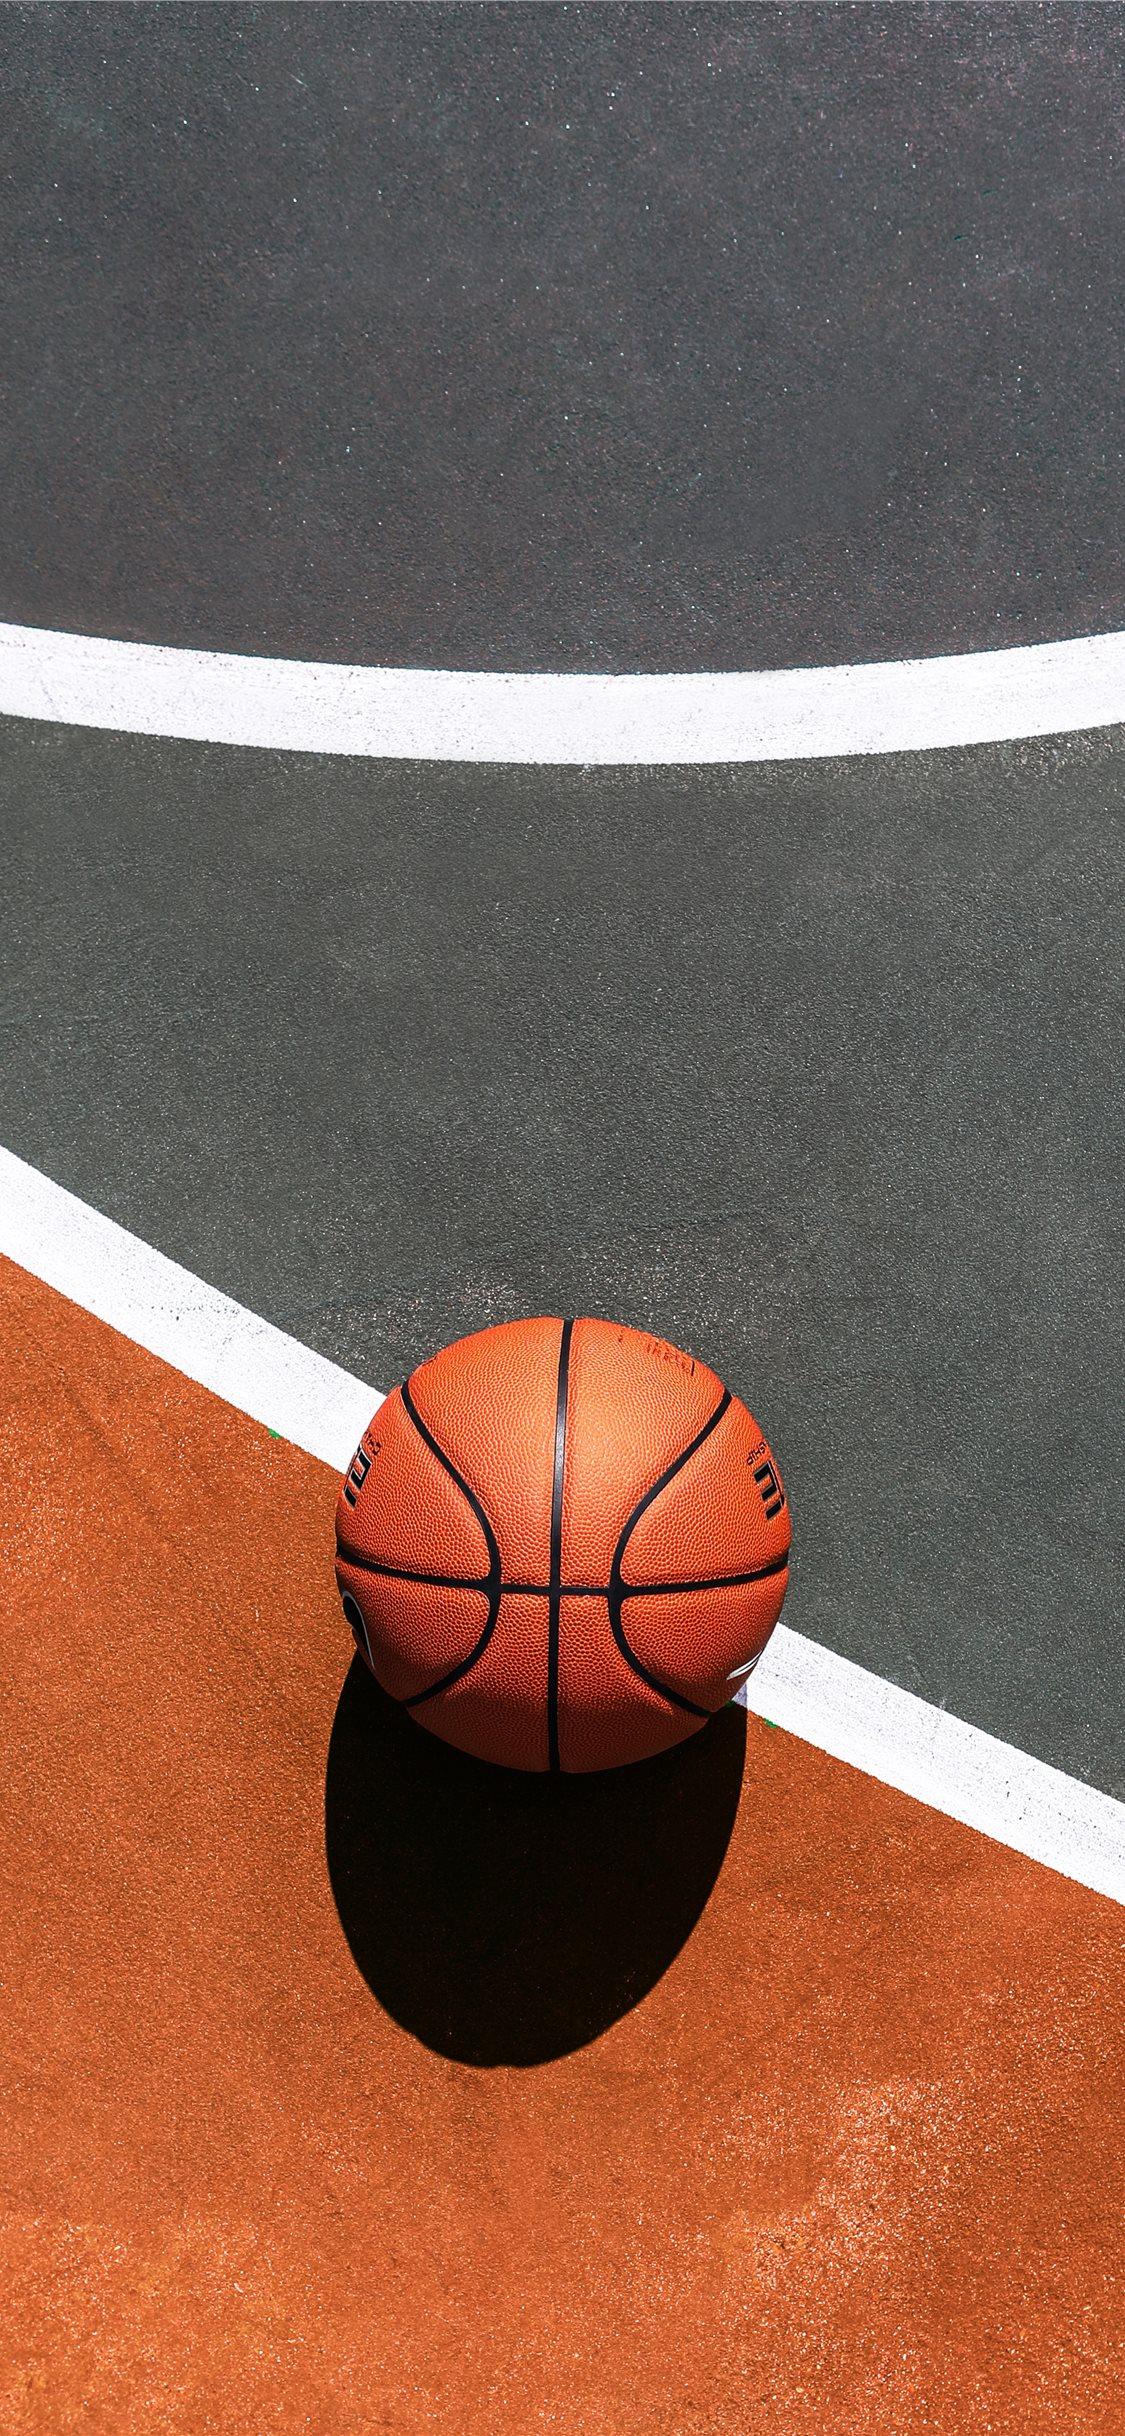 Download Ball On Court Cool Basketball Iphone Wallpaper  Wallpaperscom